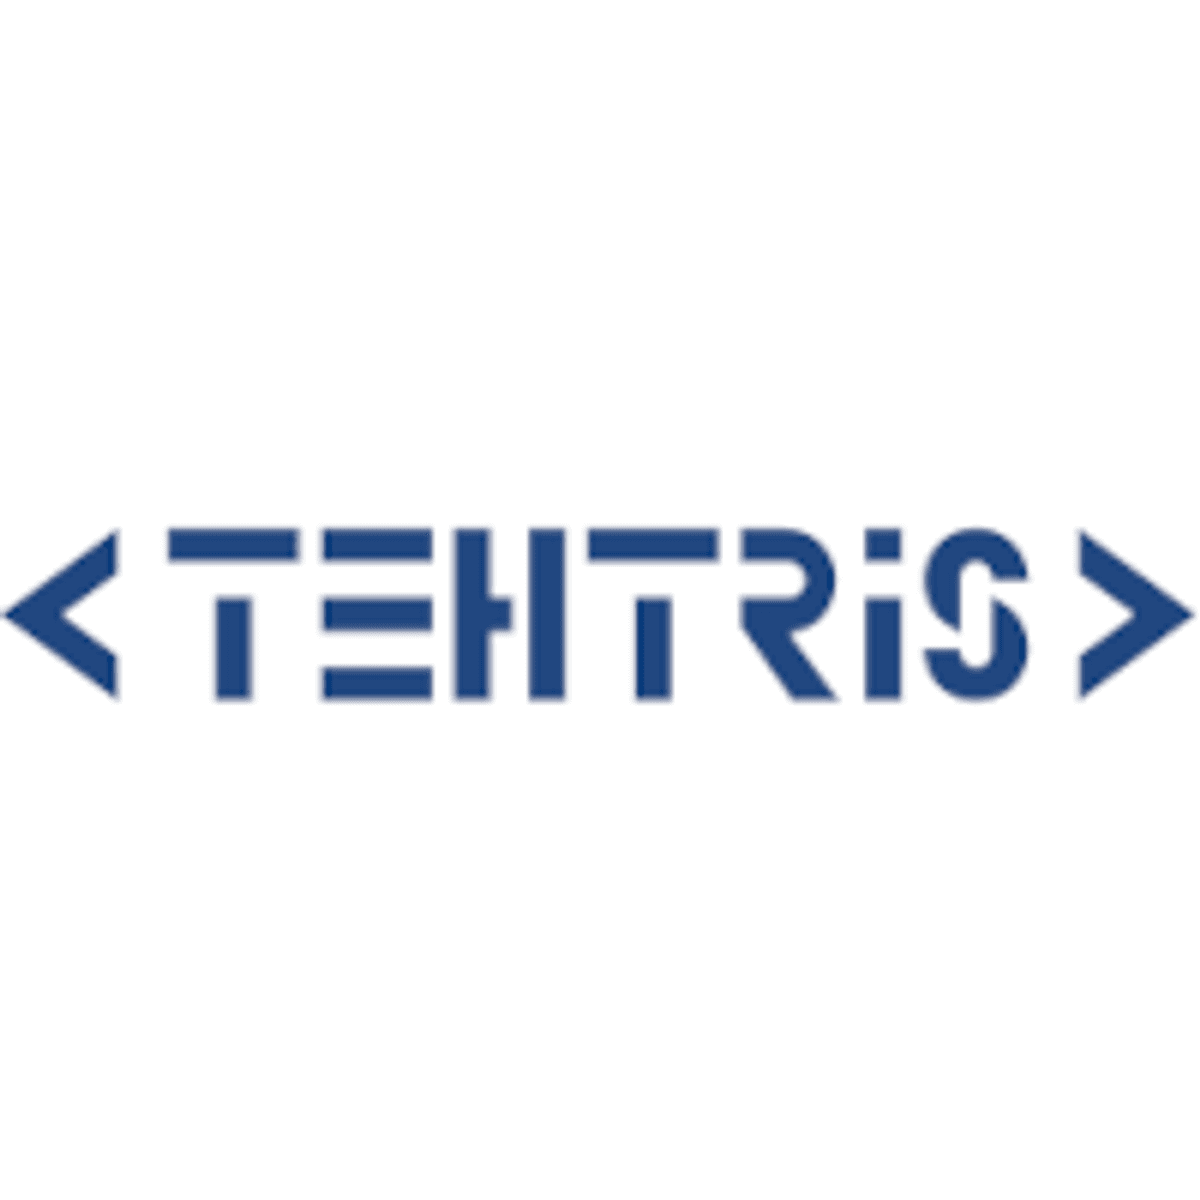 XDR-leverancier TEHTRIS breidt Europese aanwezigheid uit image